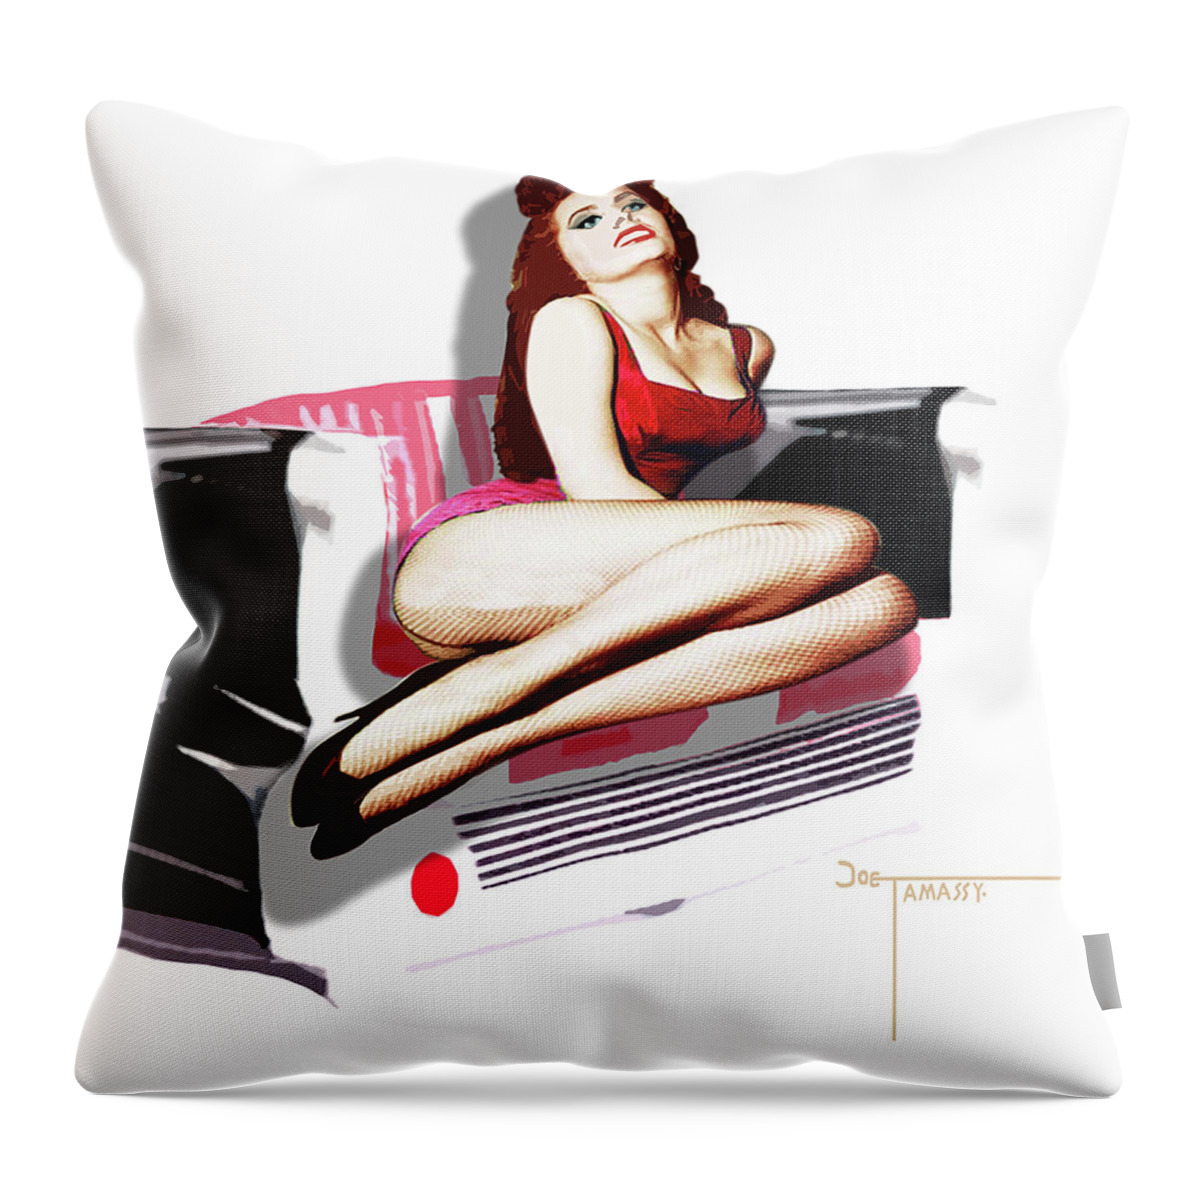 Popart Throw Pillow featuring the digital art Pop-art 2 by Joe Tamassy